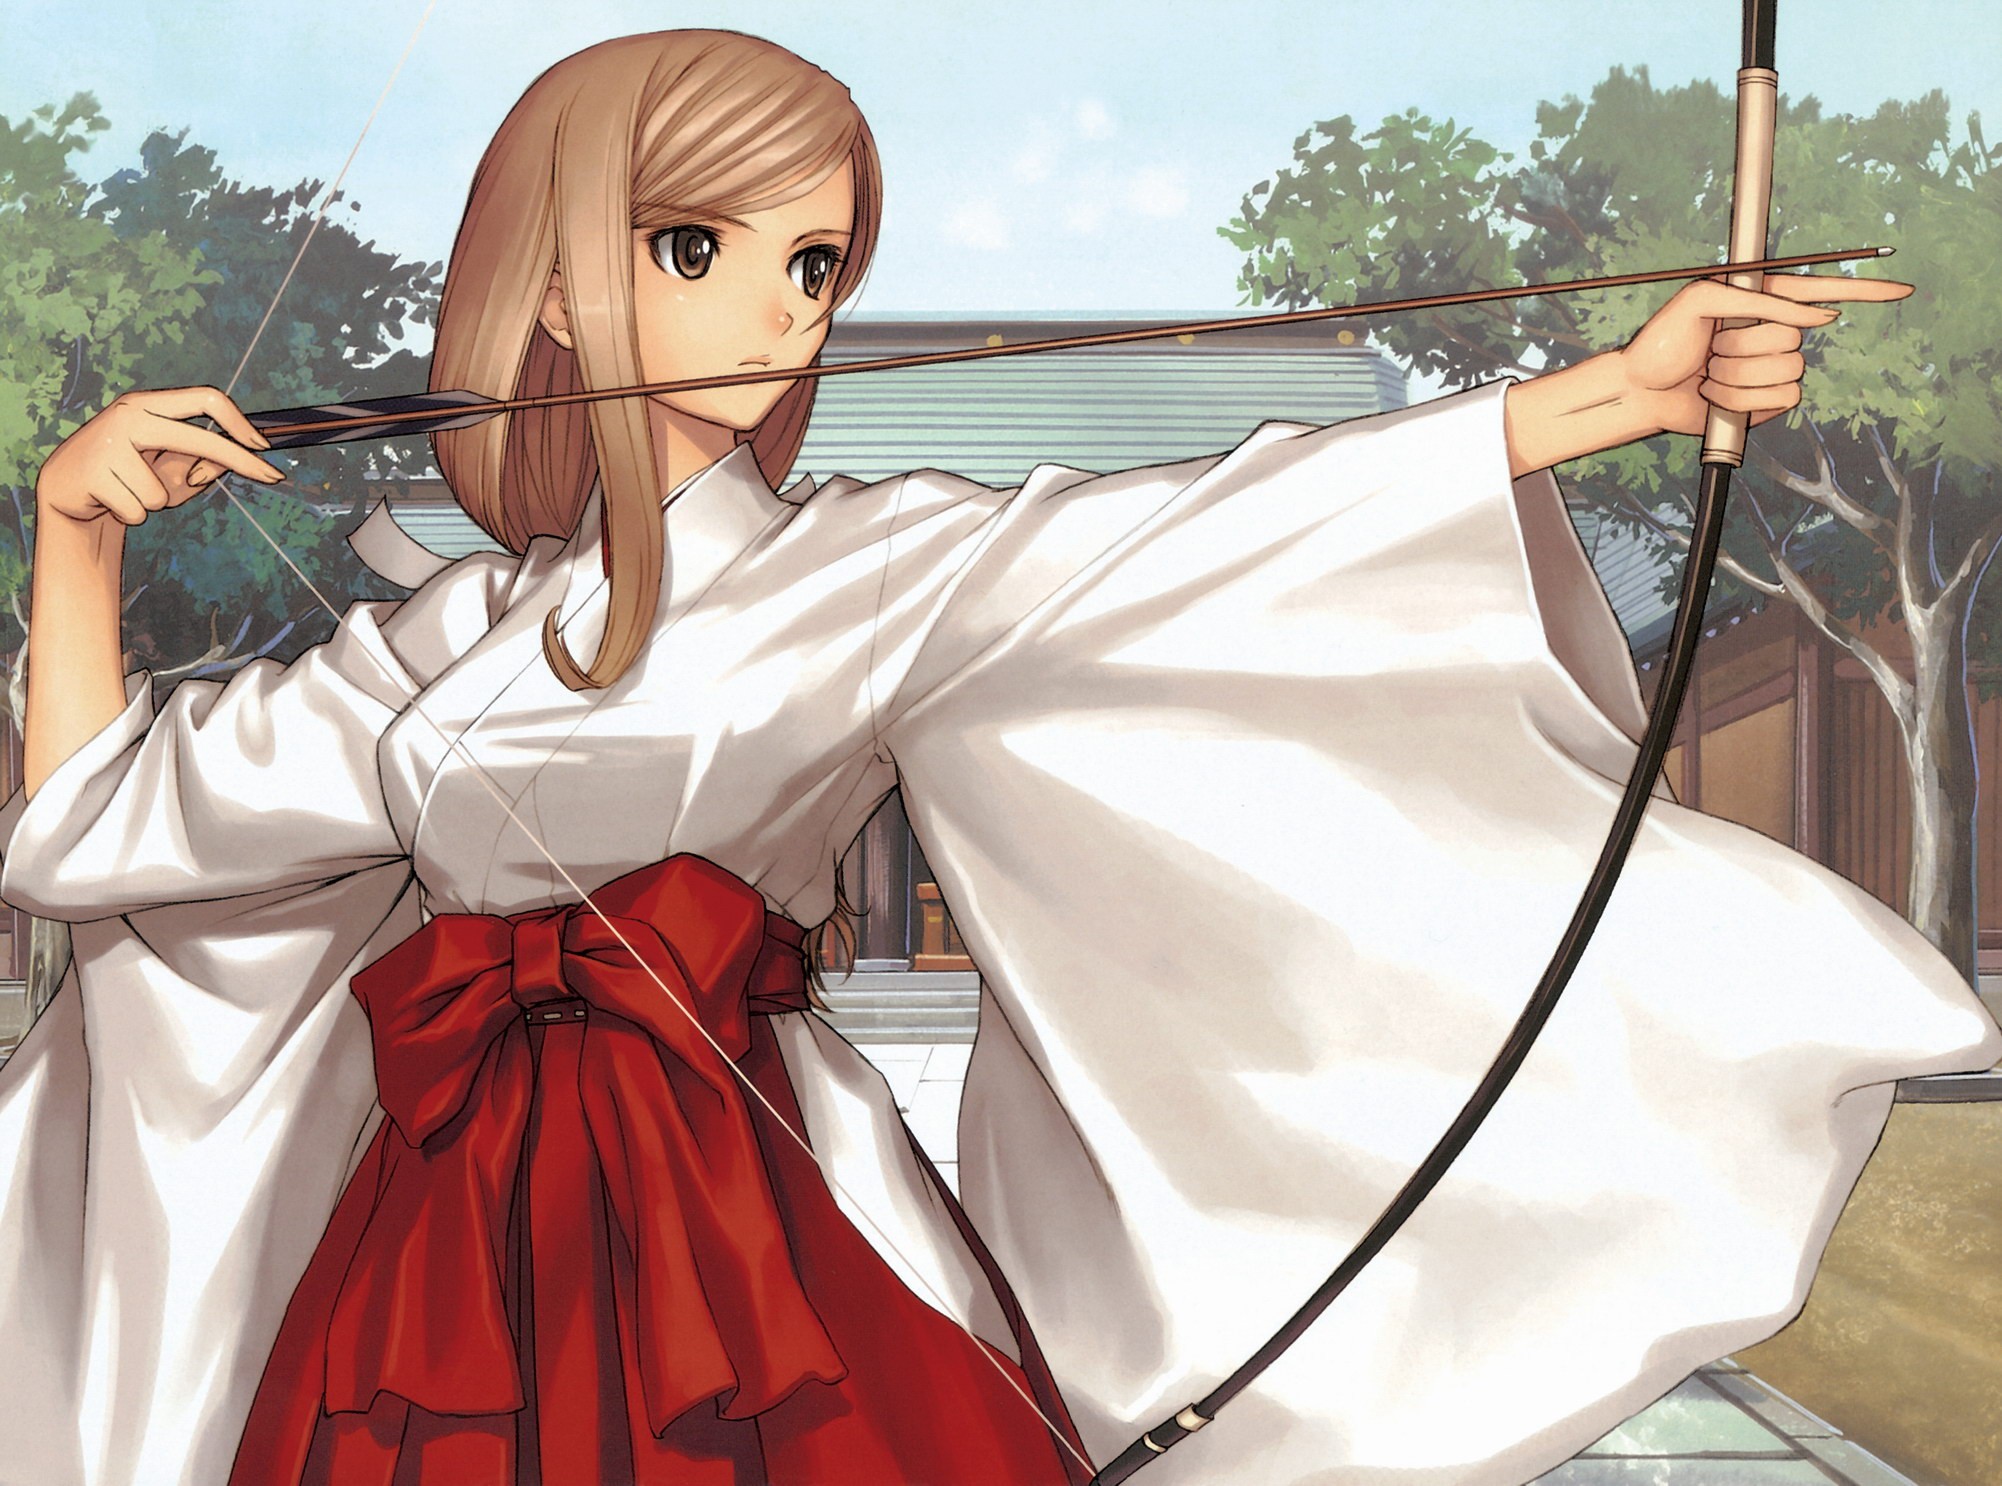 Anime 2002x1486 manga anime girls bow anime Tony Taka kimono bow and arrow brunette women miko